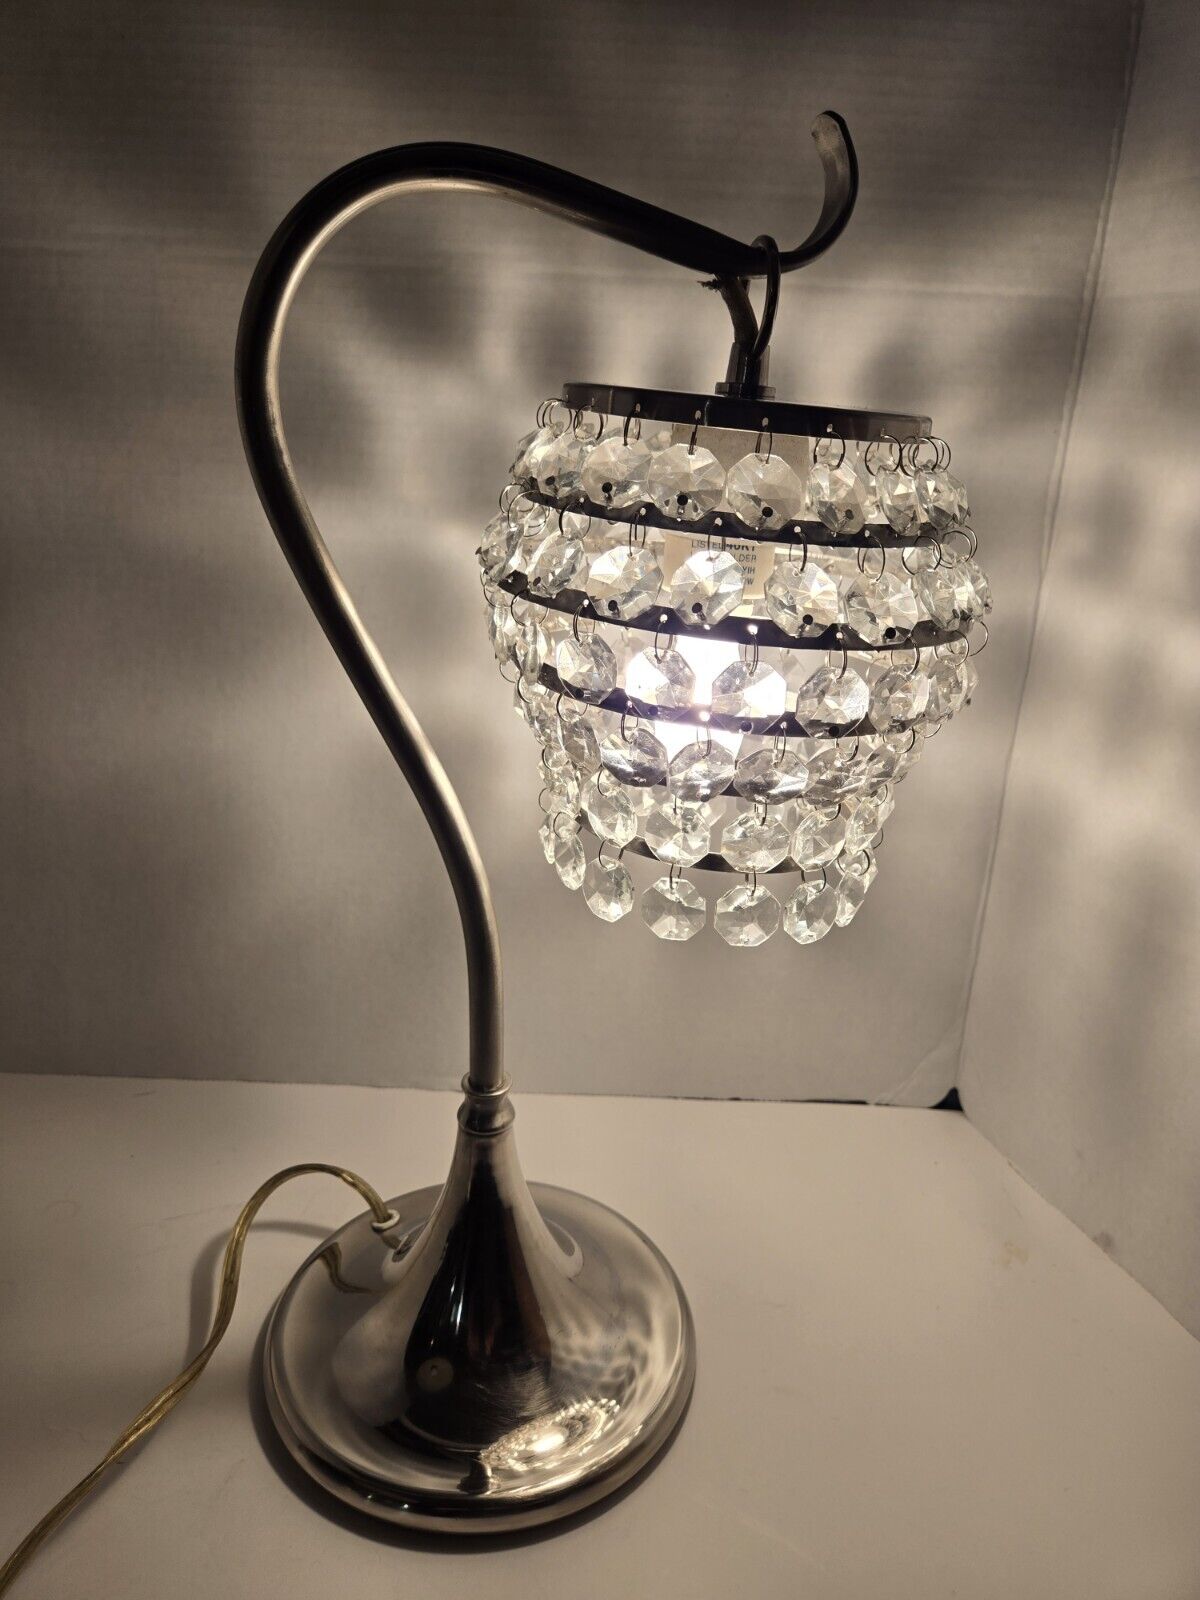 Vintage C.N. Burman Crystal Hanging Lamp w/Chrome Base For Bedroom, Desk Etc.